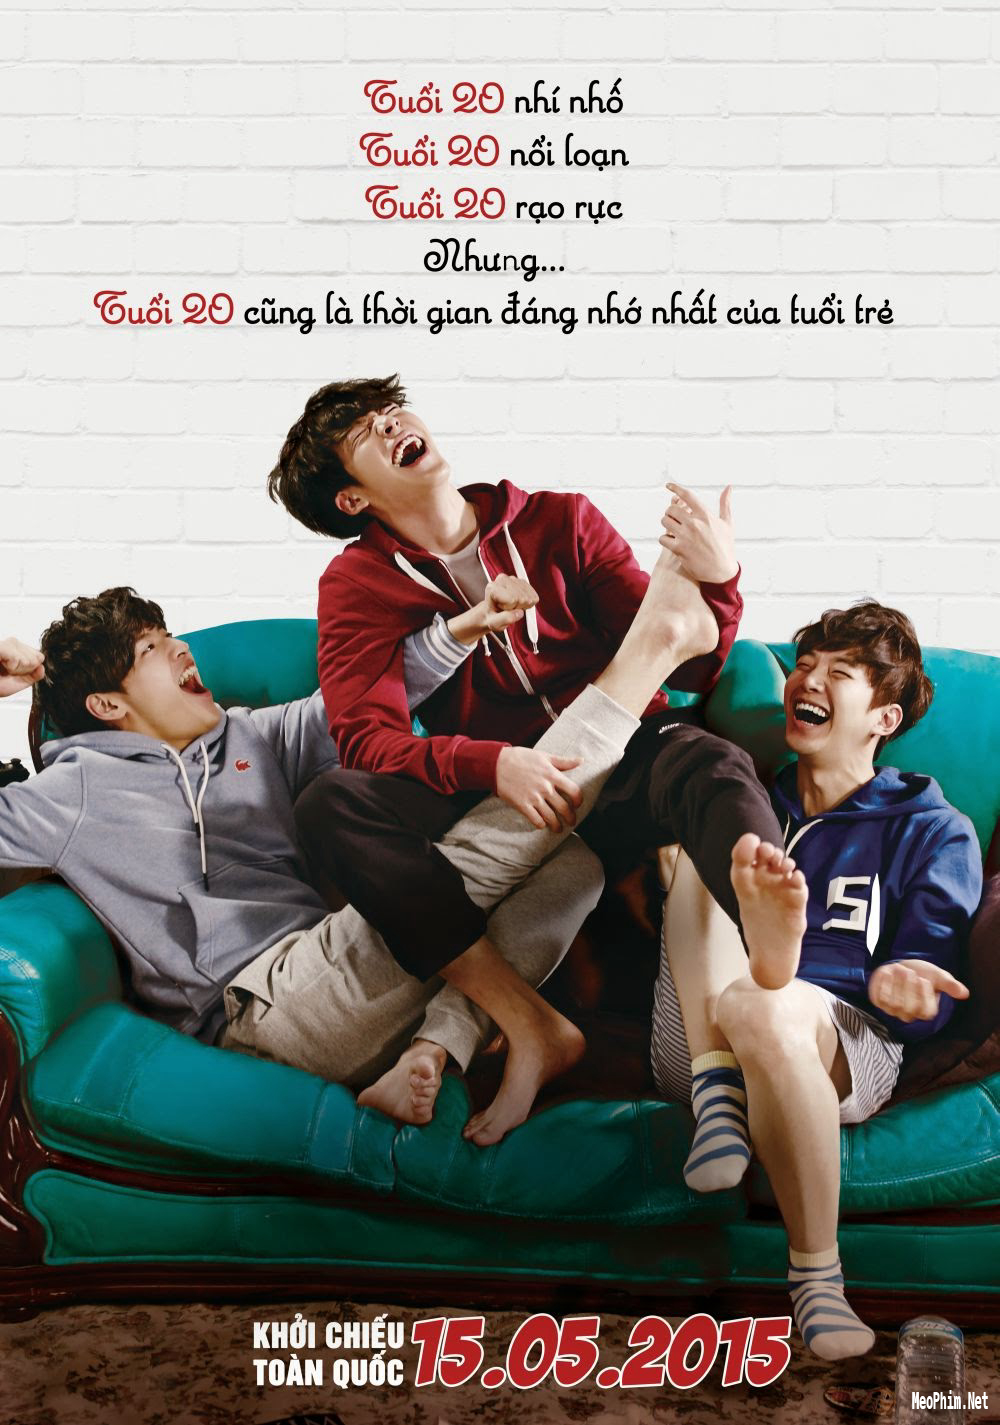 Phim hài lẻ Hàn Quốc hay nhất: Tuổi 20